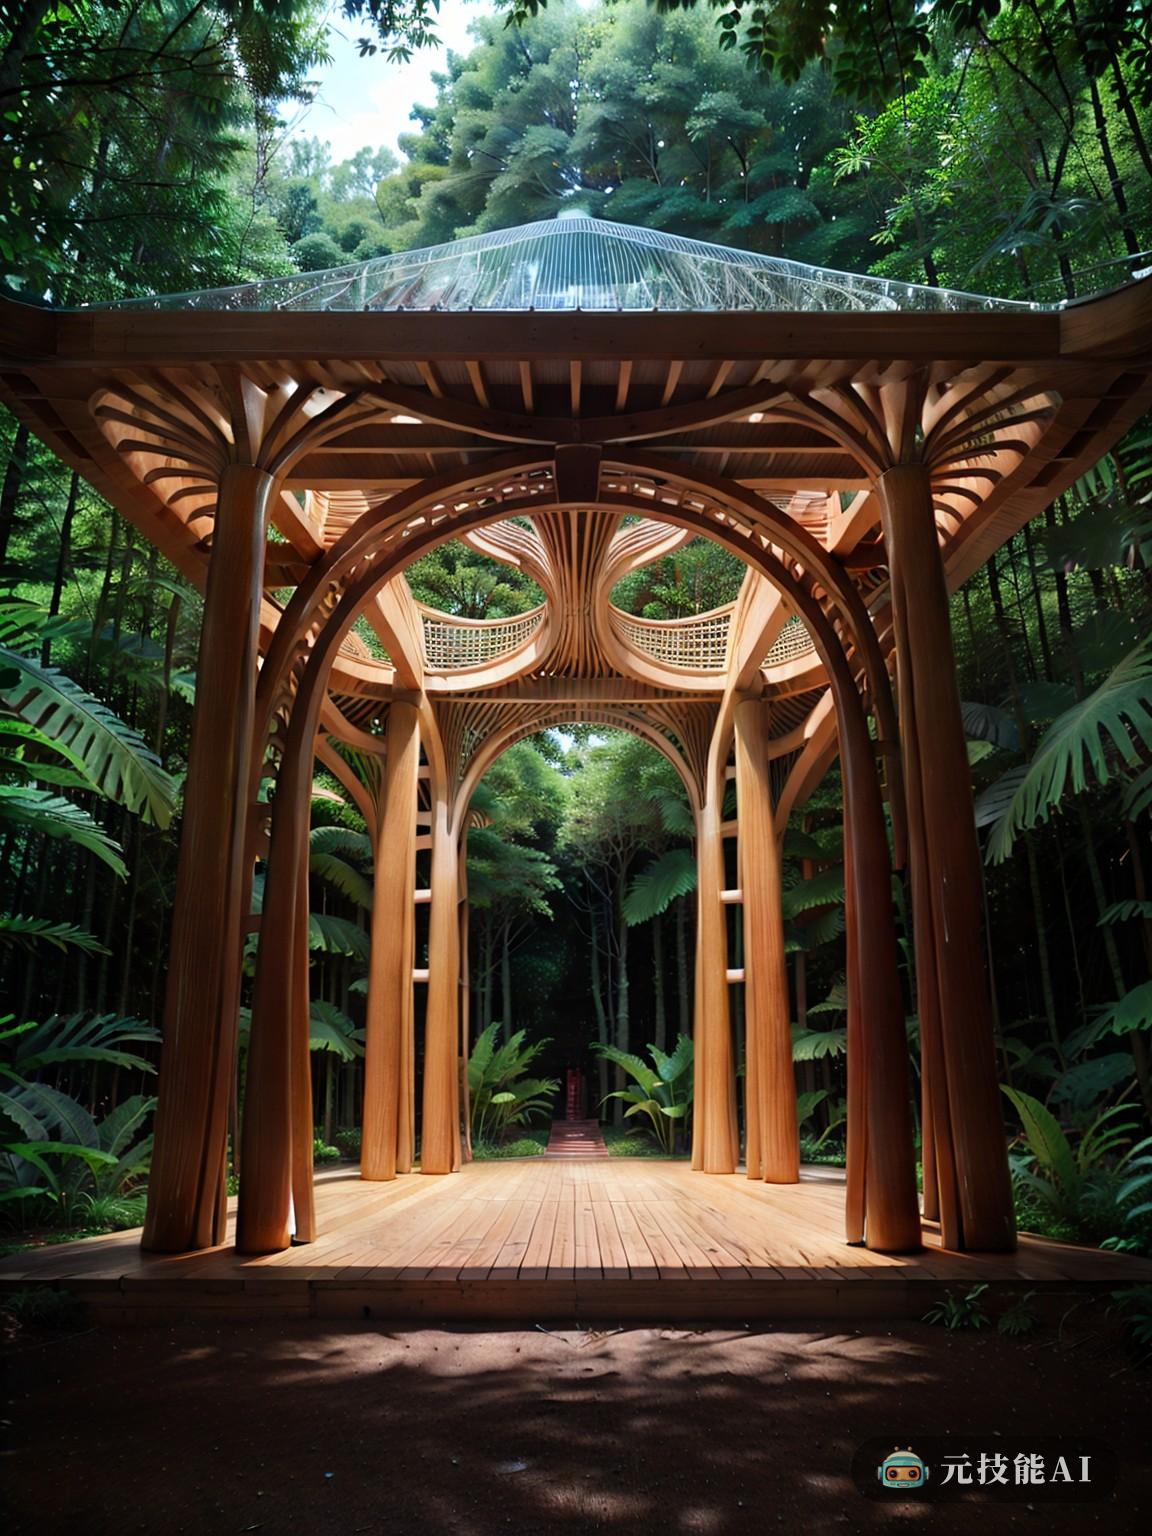 在南美热带雨林的中心，一座木结构建筑是自然与艺术结合的见证。设计的新艺术风格，其标志性的格拉斯哥风格，复杂的雕刻和繁复的让人想起美丽的发现在大自然。木结构似乎发出半透明的光芒，让雨林的自然光在其表面跳舞，照亮其复杂的细节。就好像这张图片捕捉到了“旋转理论”。木结构与环境无缝融合，与雨林融为一体。这幅画呼吁观众释放他们的想象力，超越显而易见的东西，进入艺术与自然之间隐藏的联系。